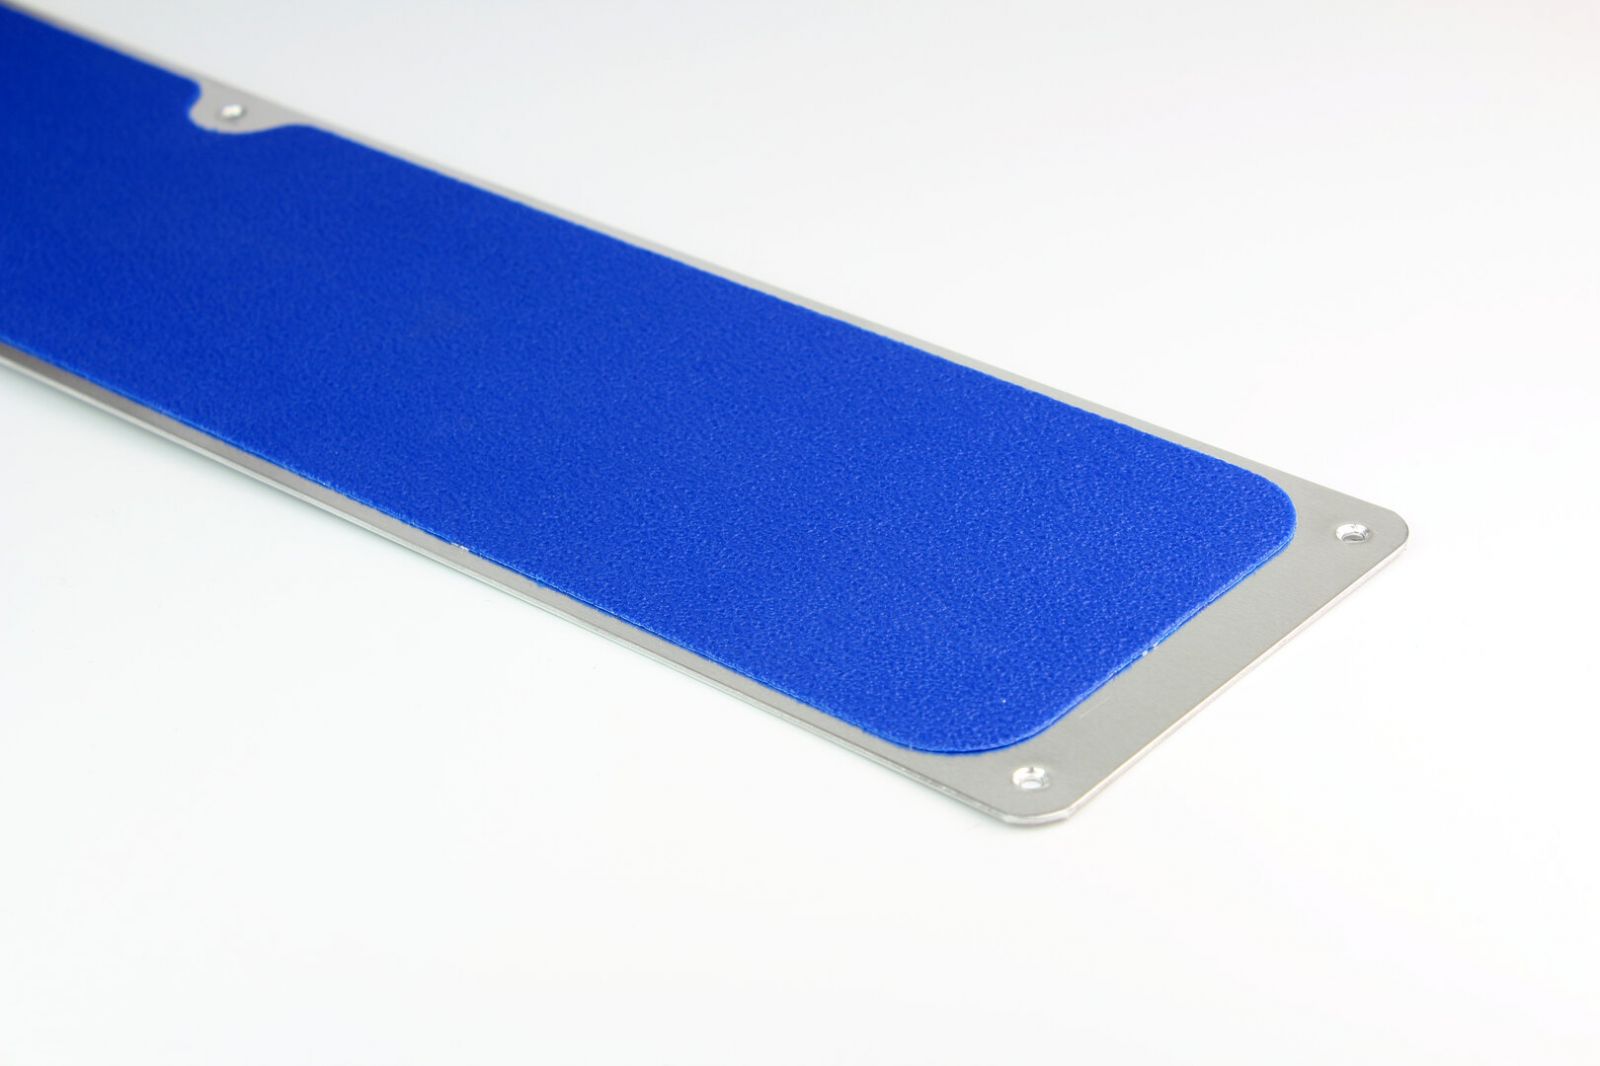 Modrá náhradní protiskluzová páska pro hliníkové nášlapy FLOMA Standard - délka 1 m, šířka 11,5 cm, tloušťka 0,7 mm